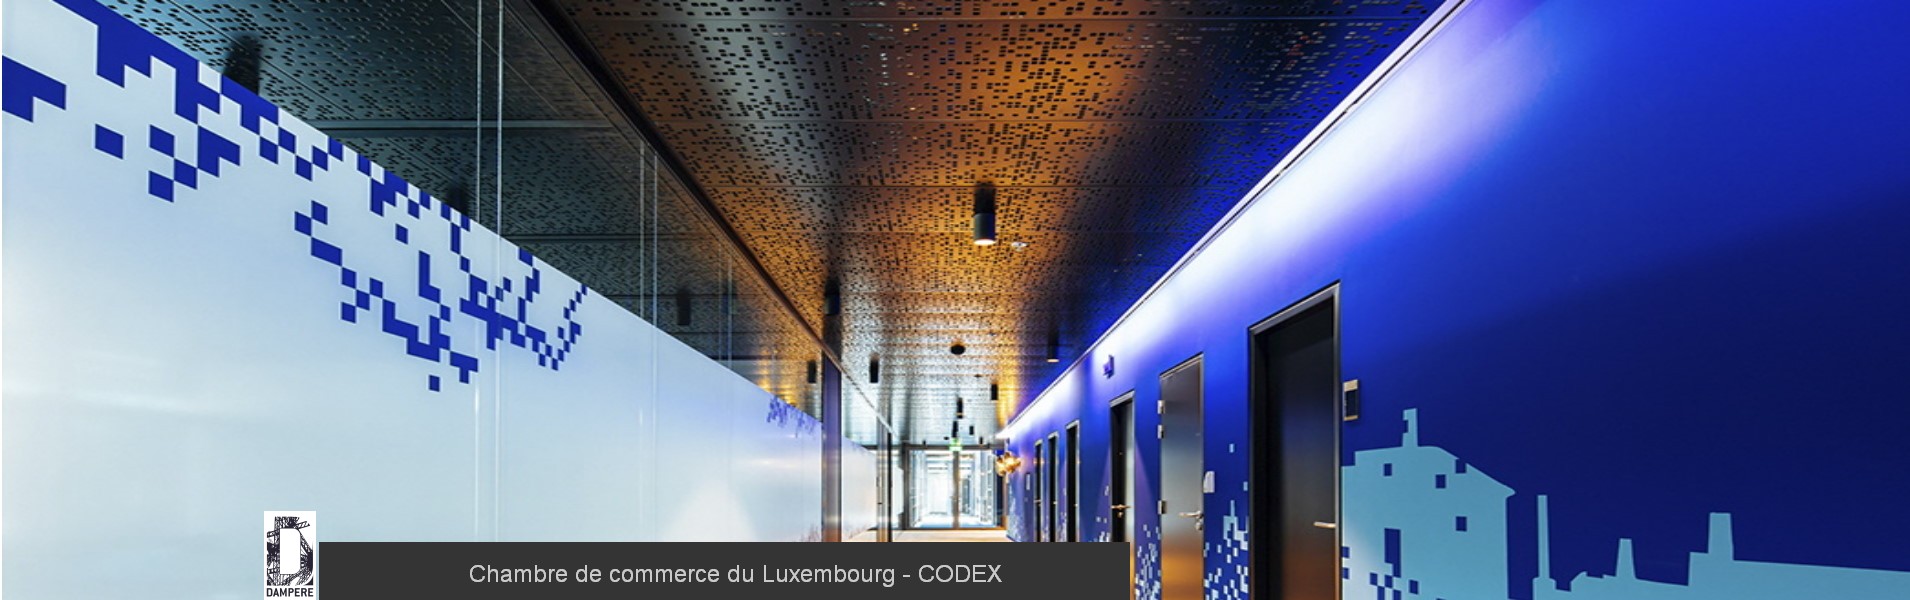 Chambre de commerce du Luxembourg CODEX 3